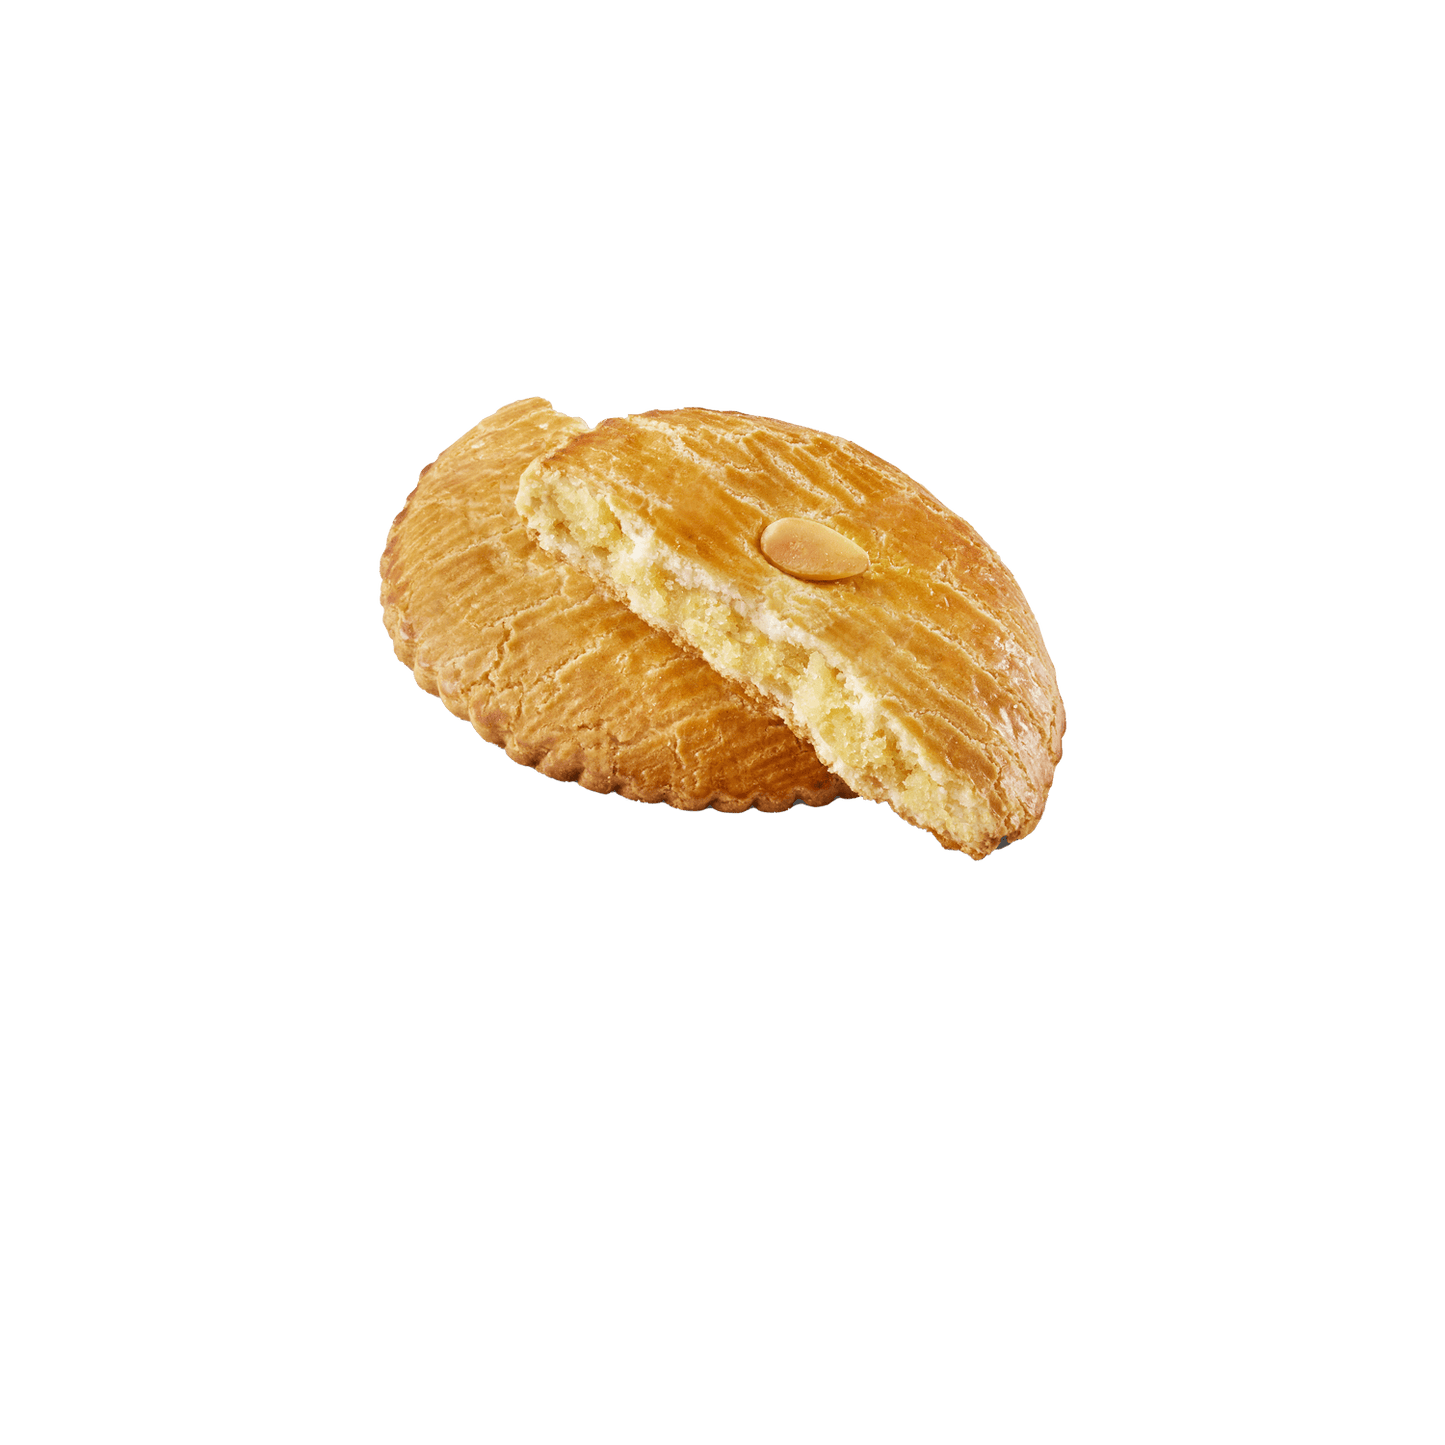 Ker Cadelac Soft Galette, Almond Flavored (France)